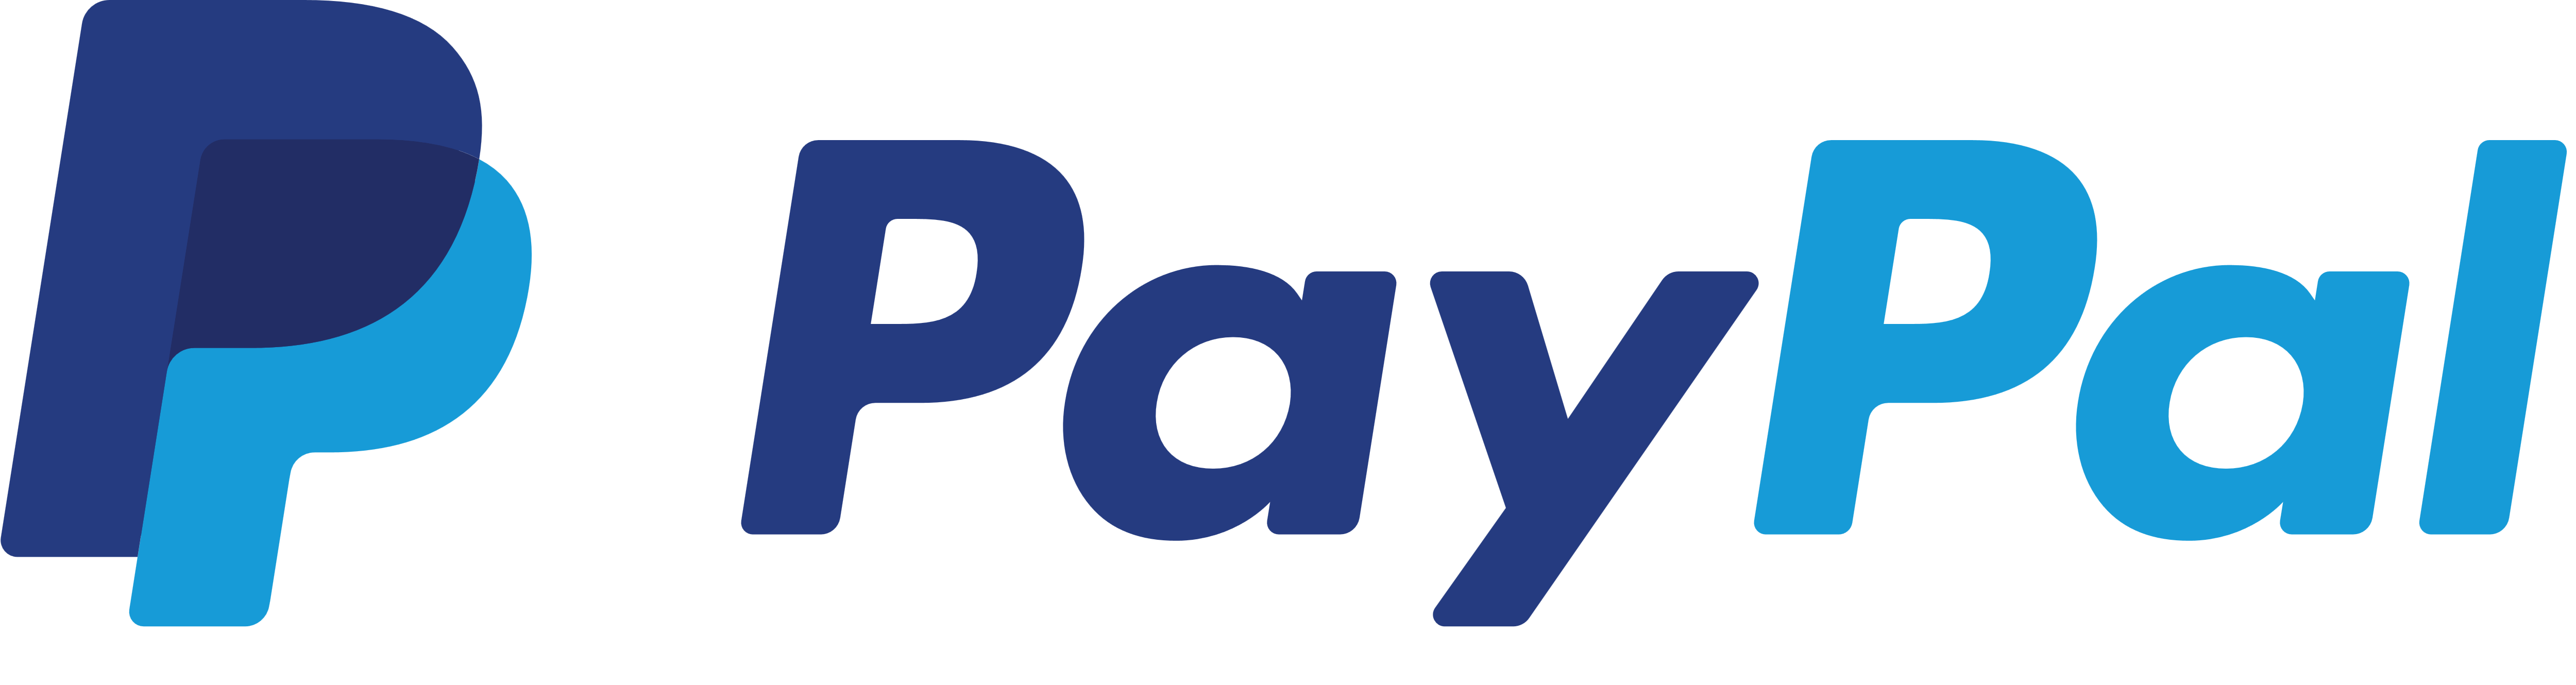 Paypal_logo_PNG1